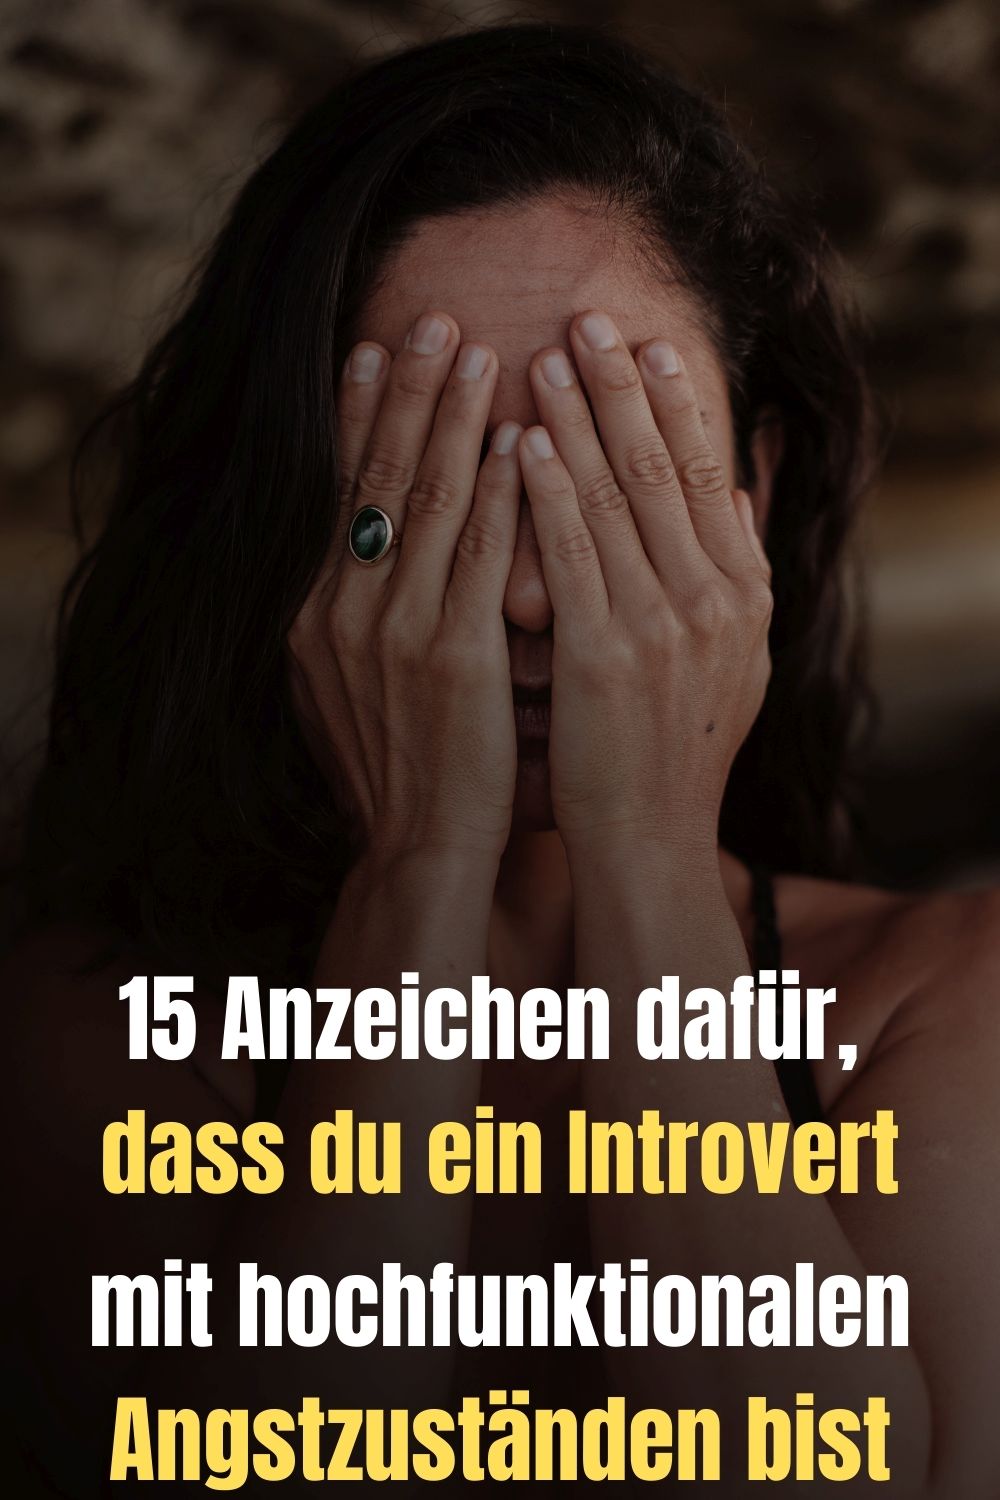 15-Anzeichen-dafuer-dass-du-ein-Introvert-mit-hochfunktionalen-Angstzustaenden-bist